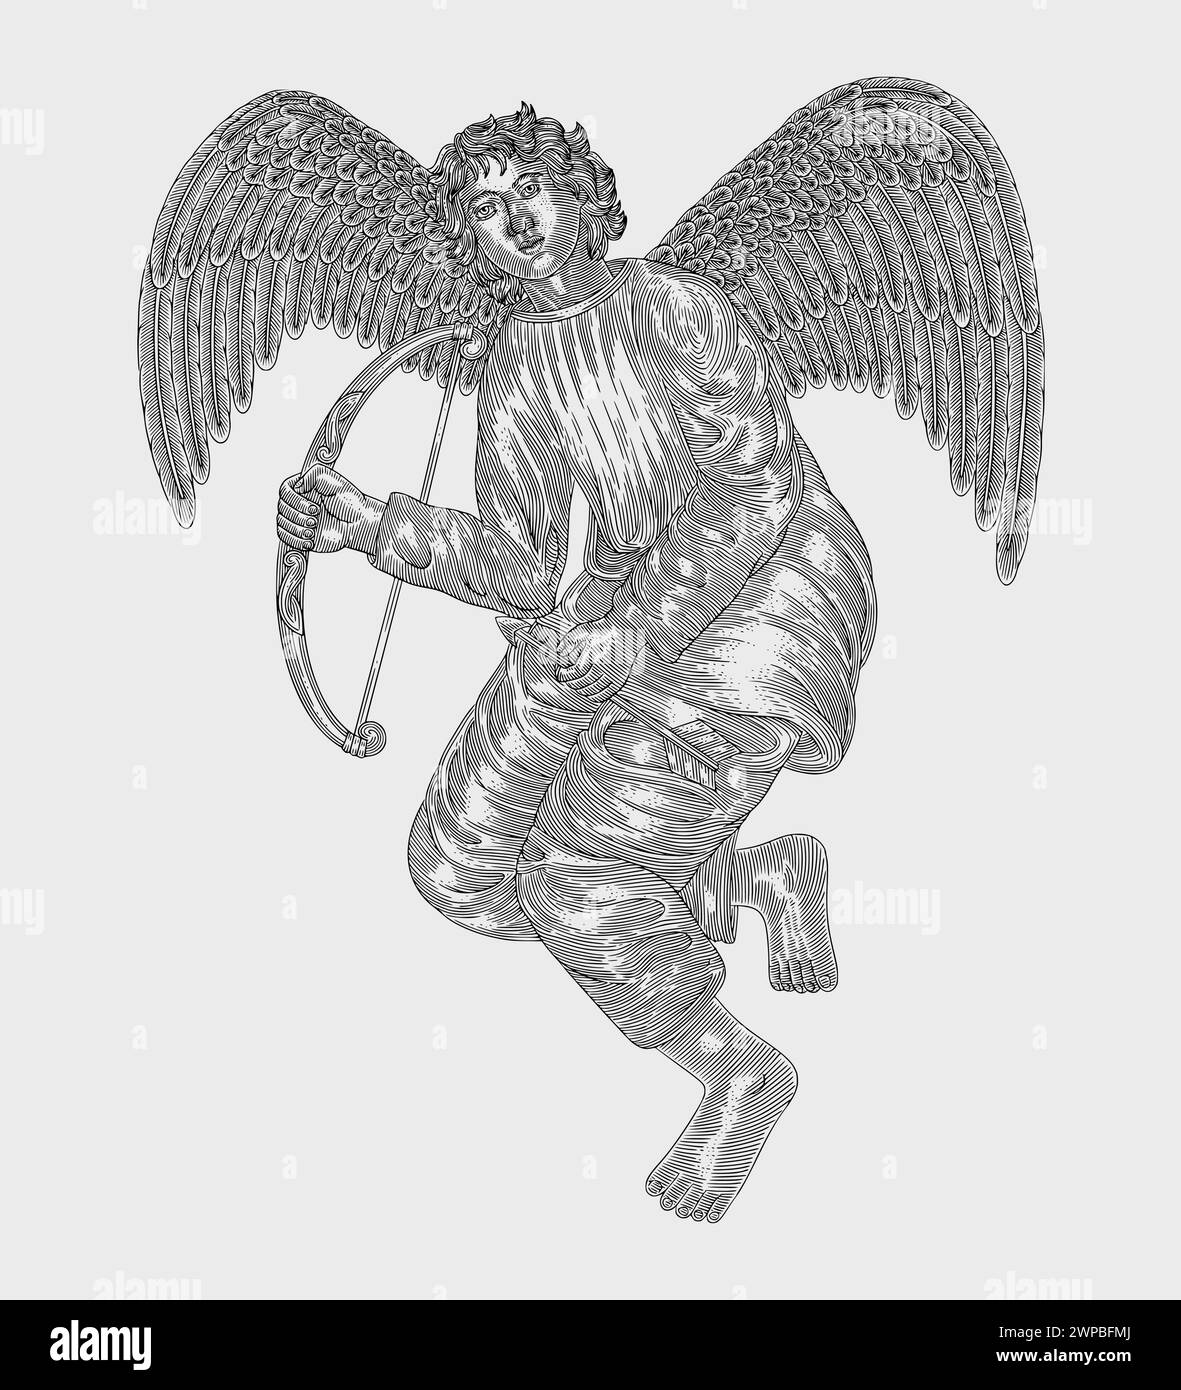 ángel con alas sosteniendo arco y flecha vintage grabado dibujo estilo ilustración Ilustración del Vector